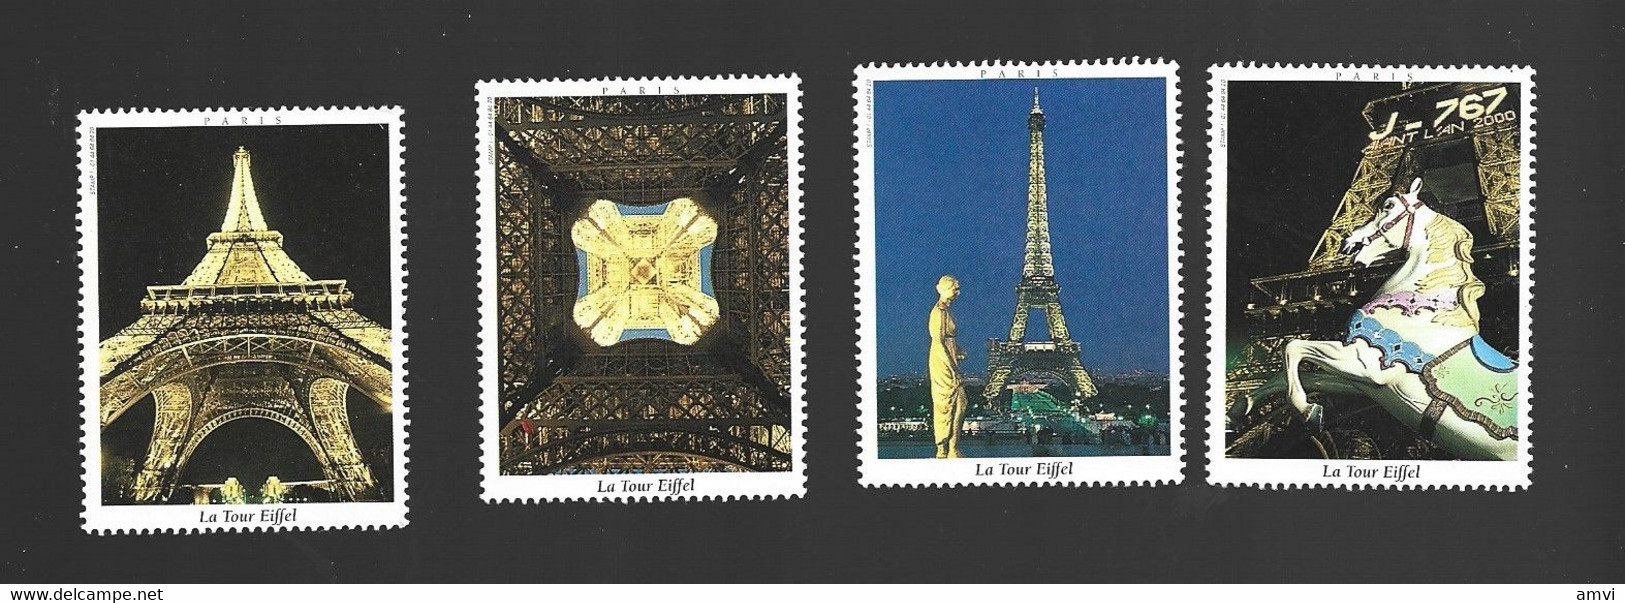 22- 5 - 1240 4 Vignette La Tour Eiffel - Turismo (Viñetas)